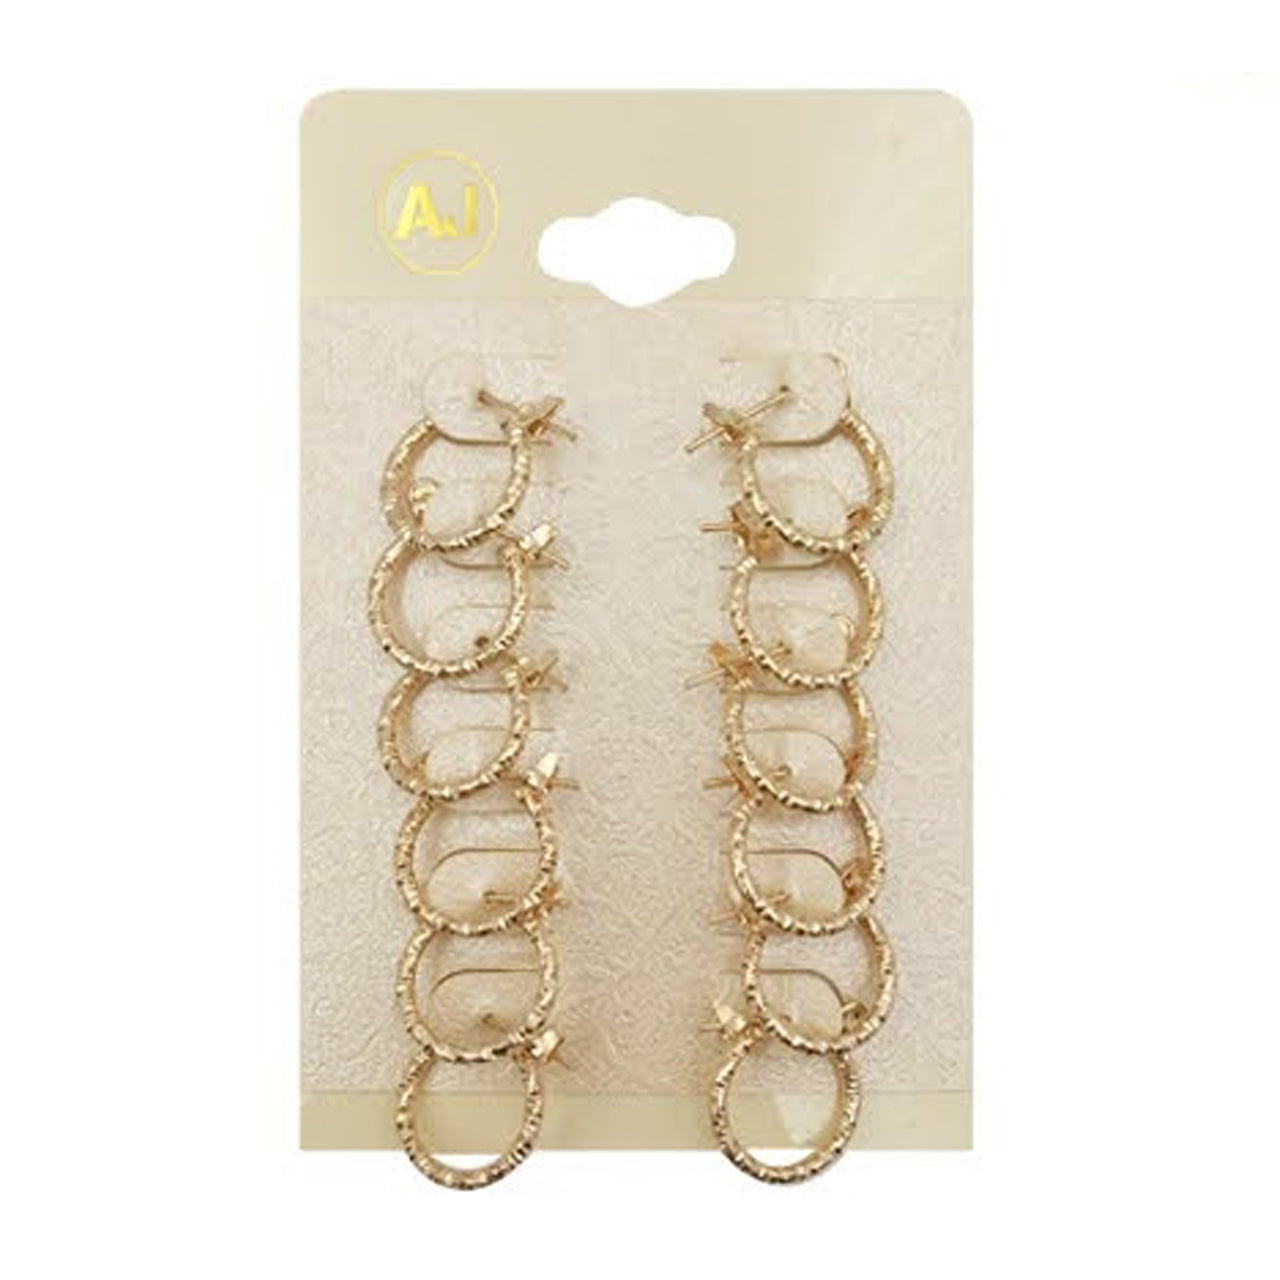 AJ-EH1038G Multi Hoop Earrings 'Gold' : 1 DZ